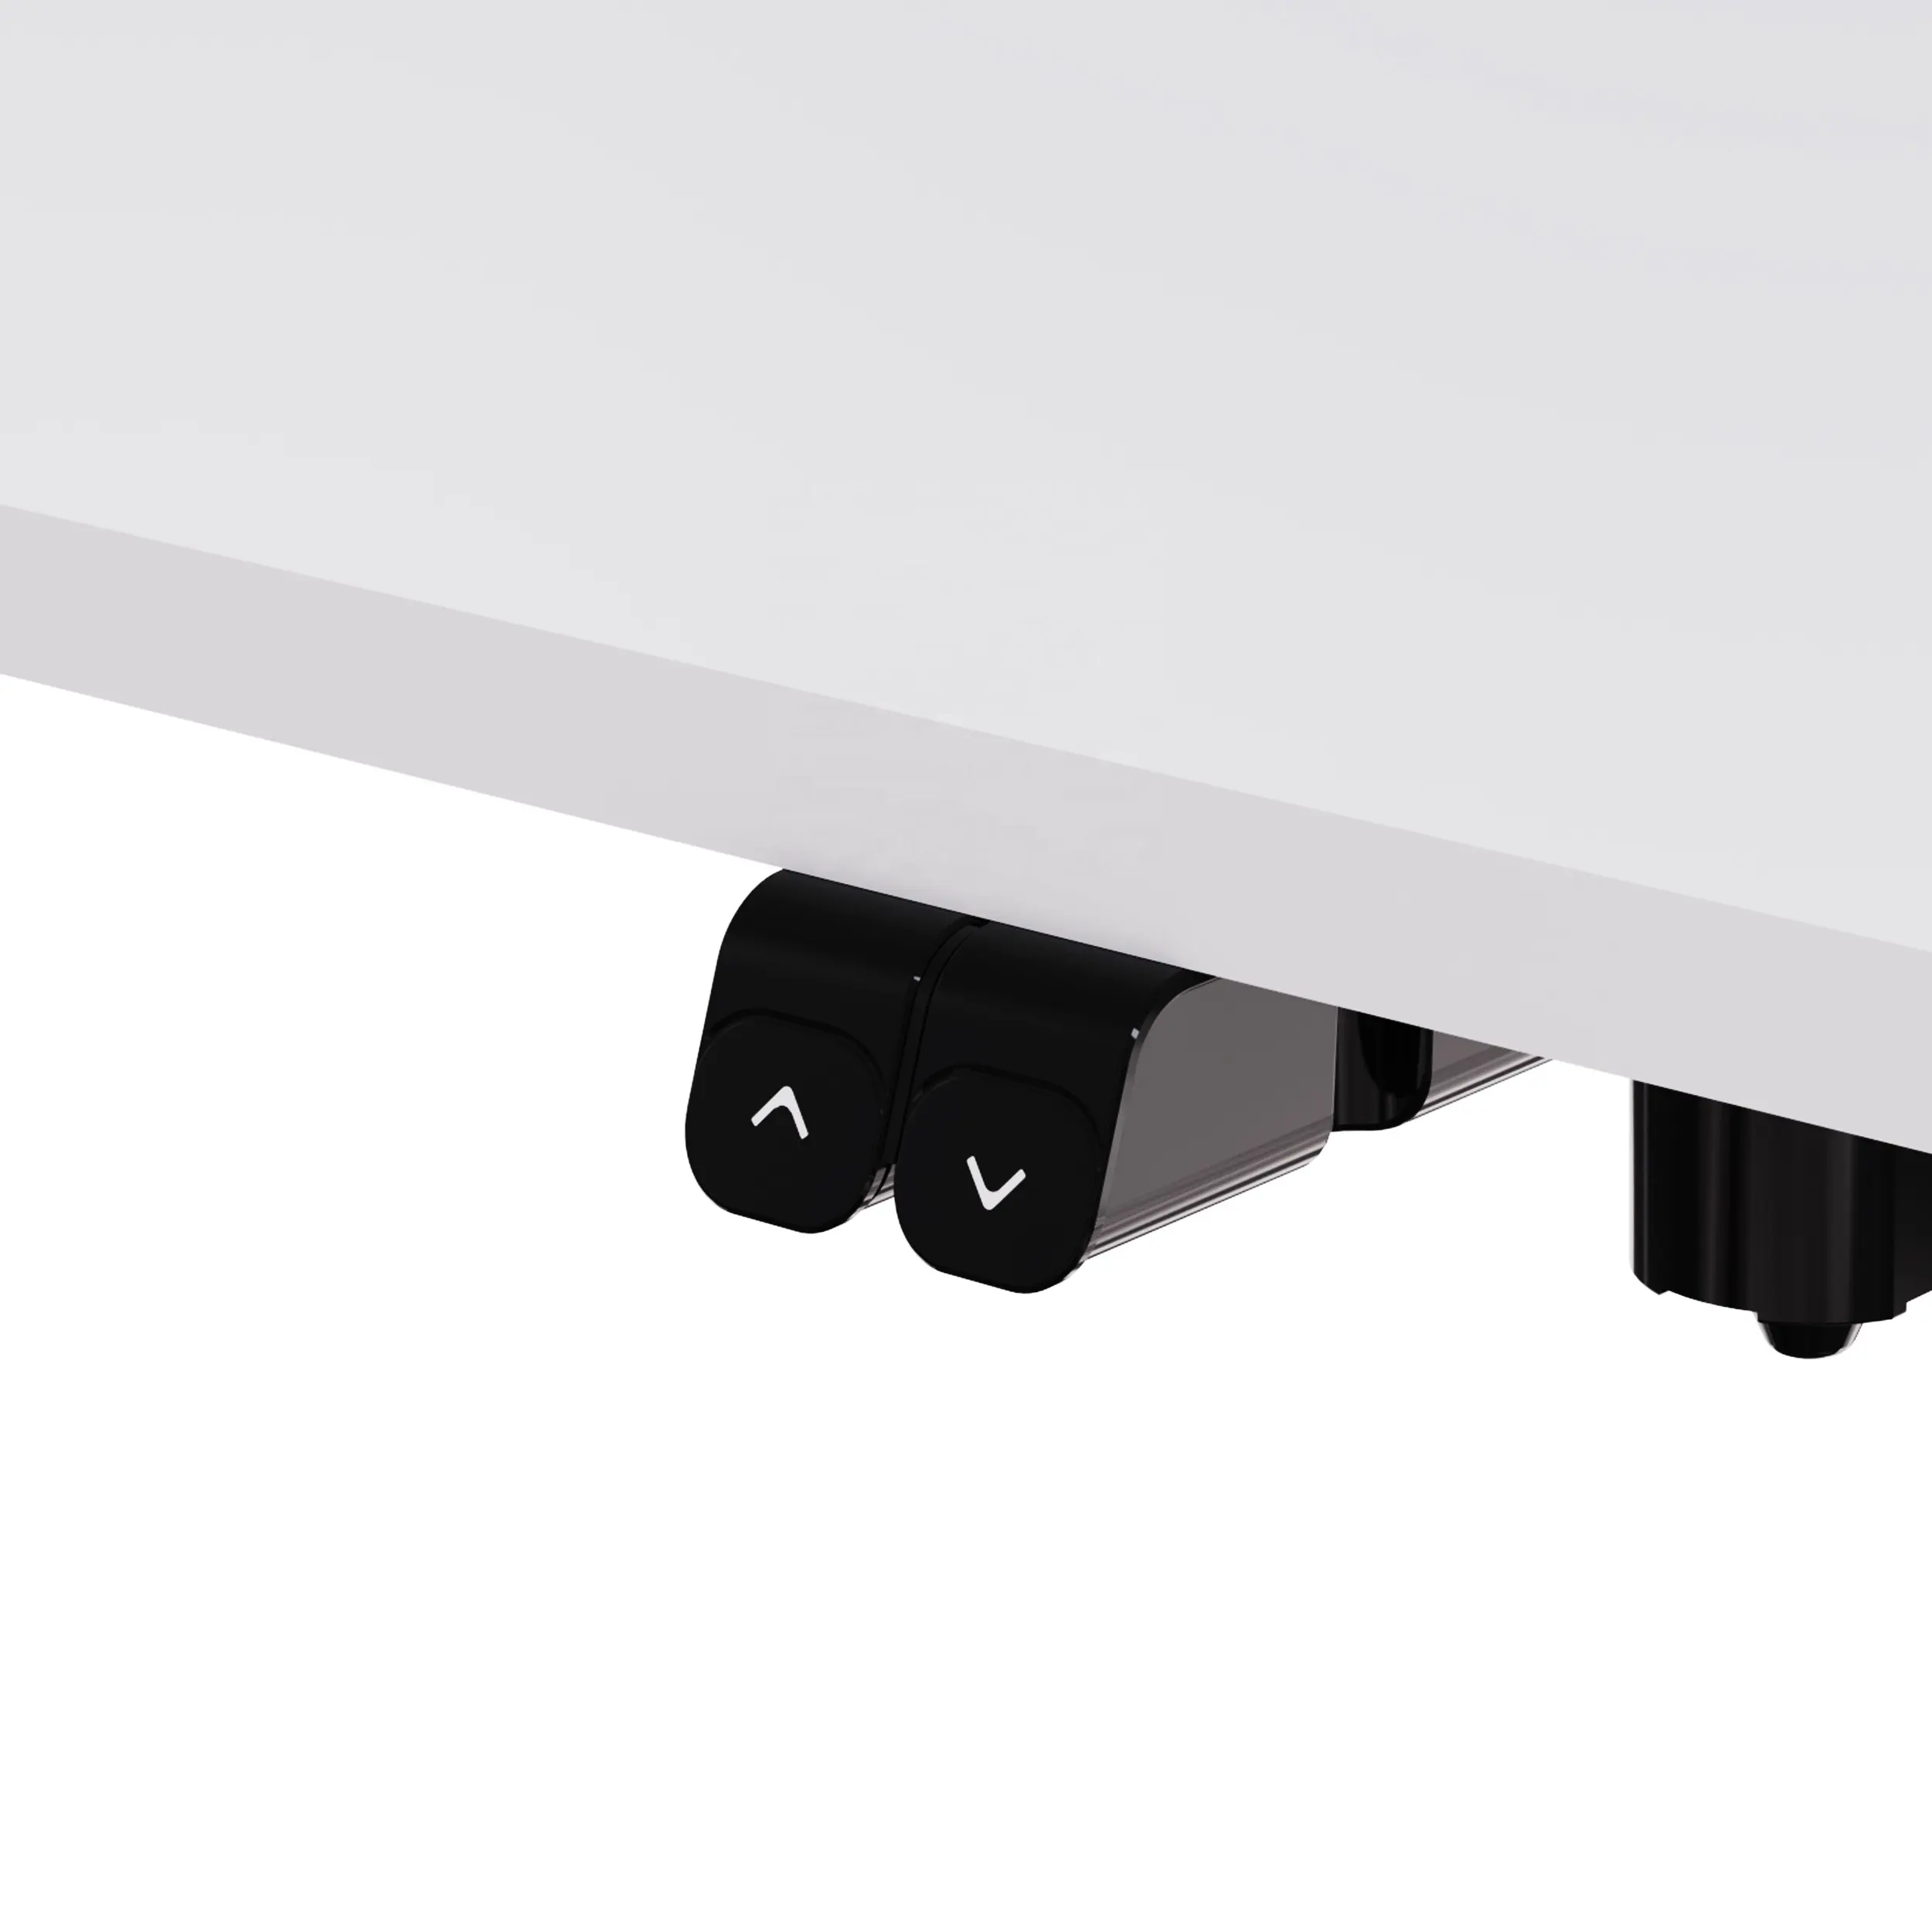 V-mounts עבור בית משרד חשמלי יחיד מנוע גובה מתכוונן עומד שולחן עם הגנה תרמית VM-JSD5-01-1P